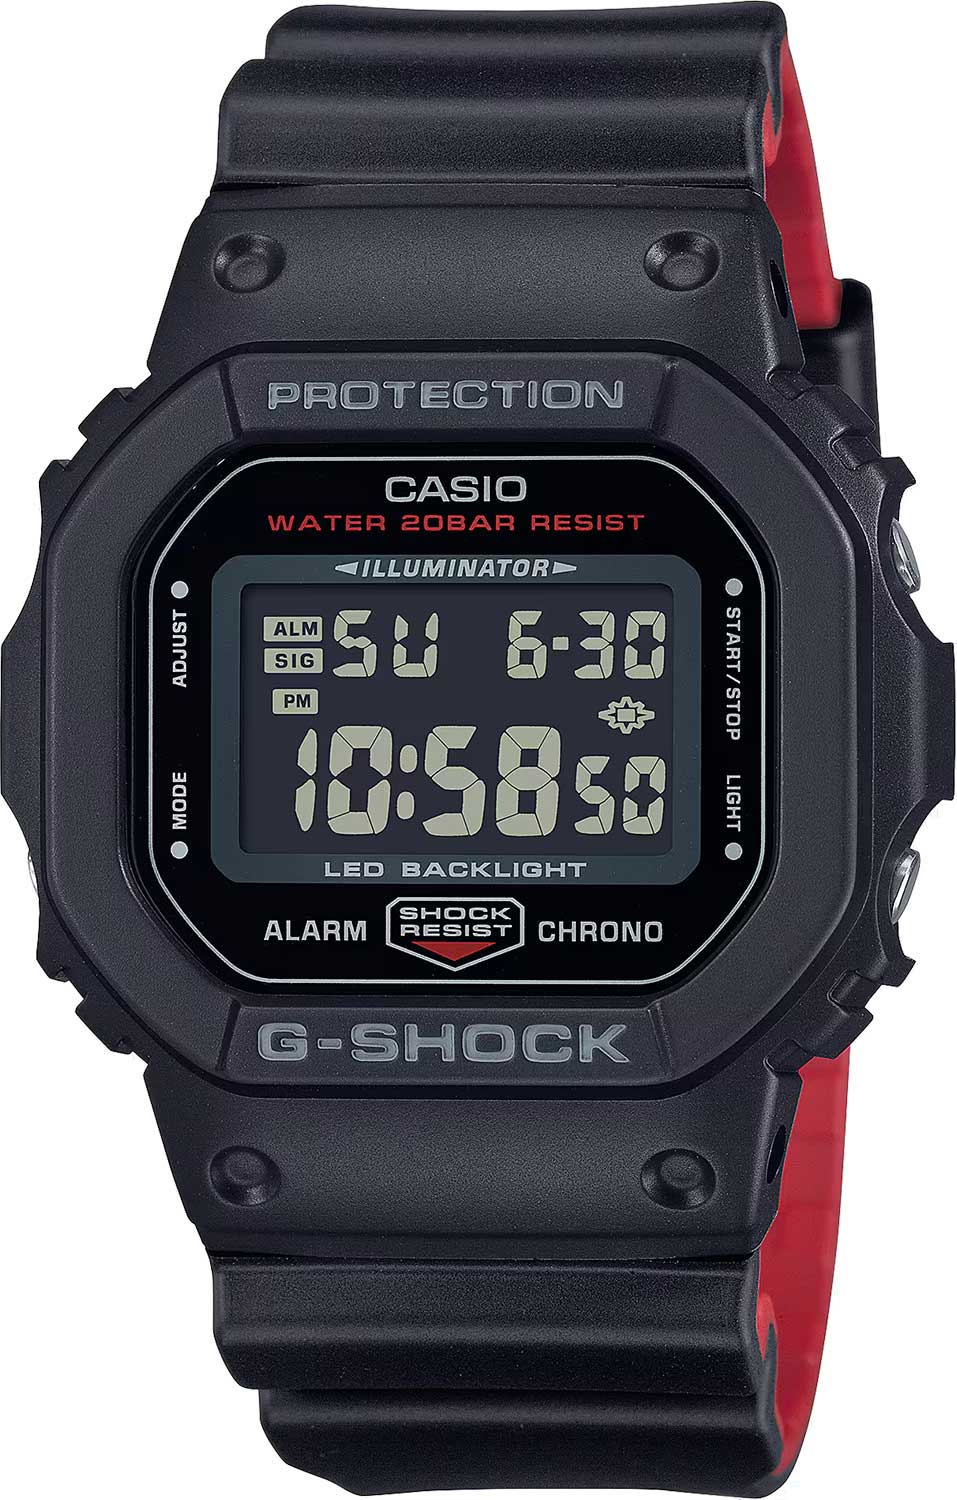    Casio G-SHOCK DW-5600UHR-1  